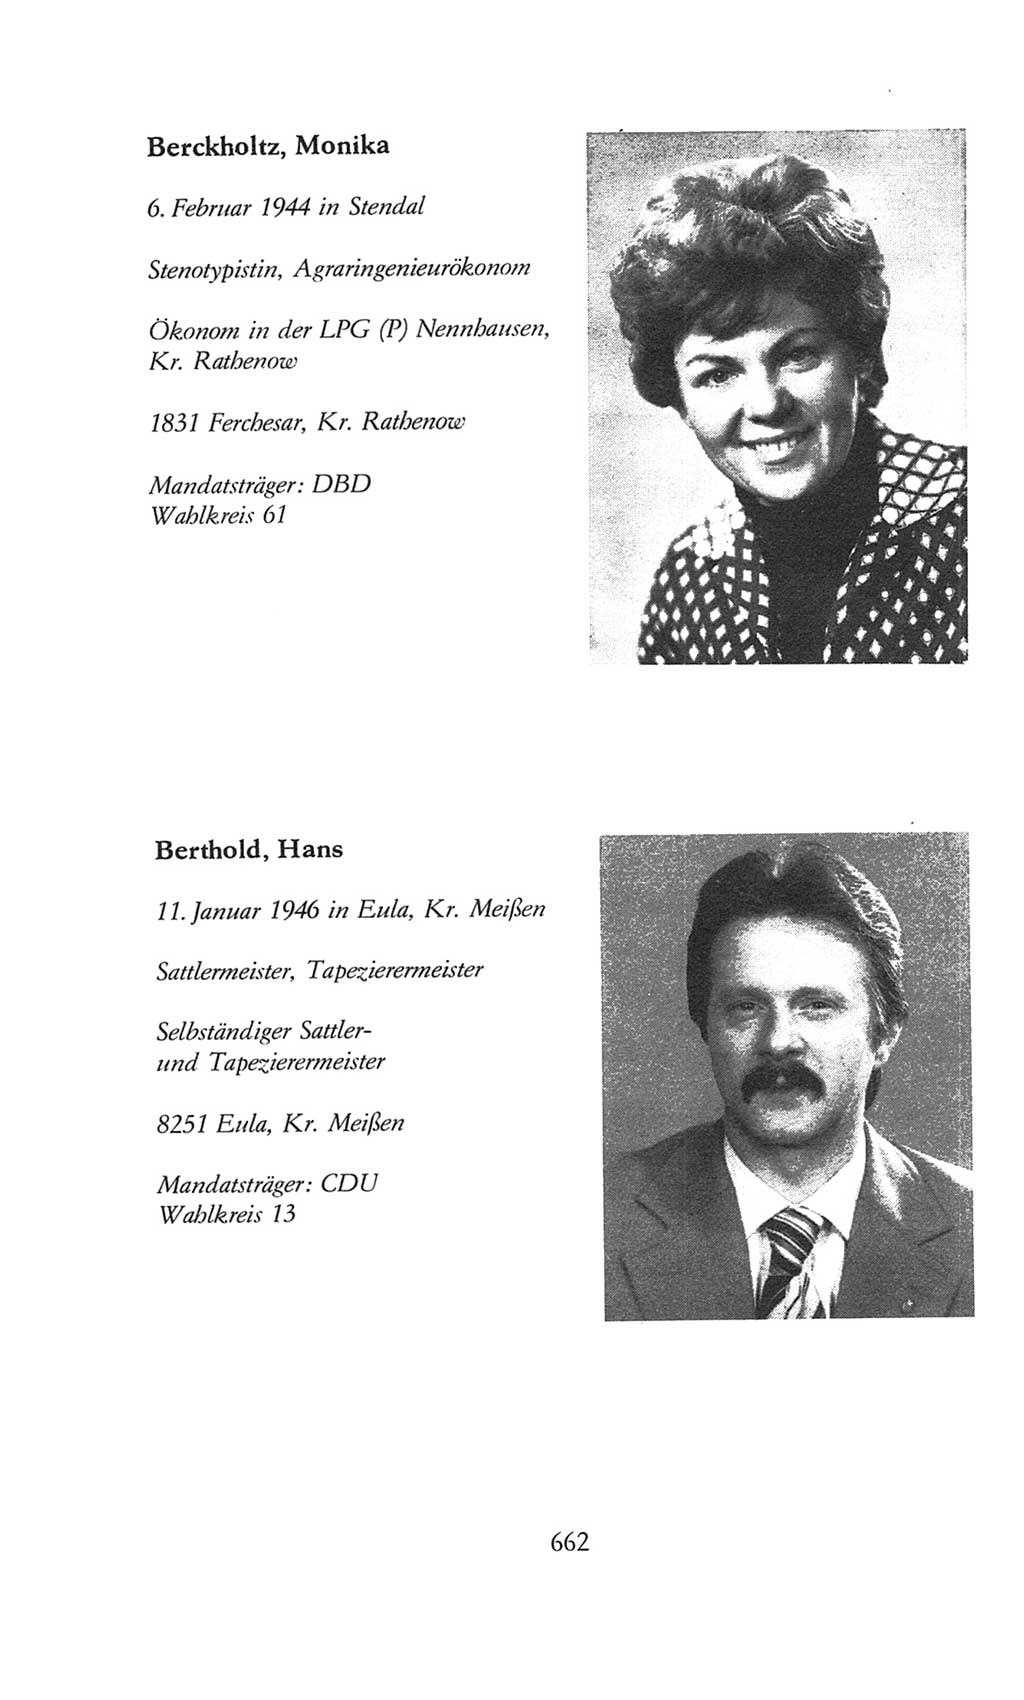 Volkskammer (VK) der Deutschen Demokratischen Republik (DDR), 8. Wahlperiode 1981-1986, Seite 662 (VK. DDR 8. WP. 1981-1986, S. 662)